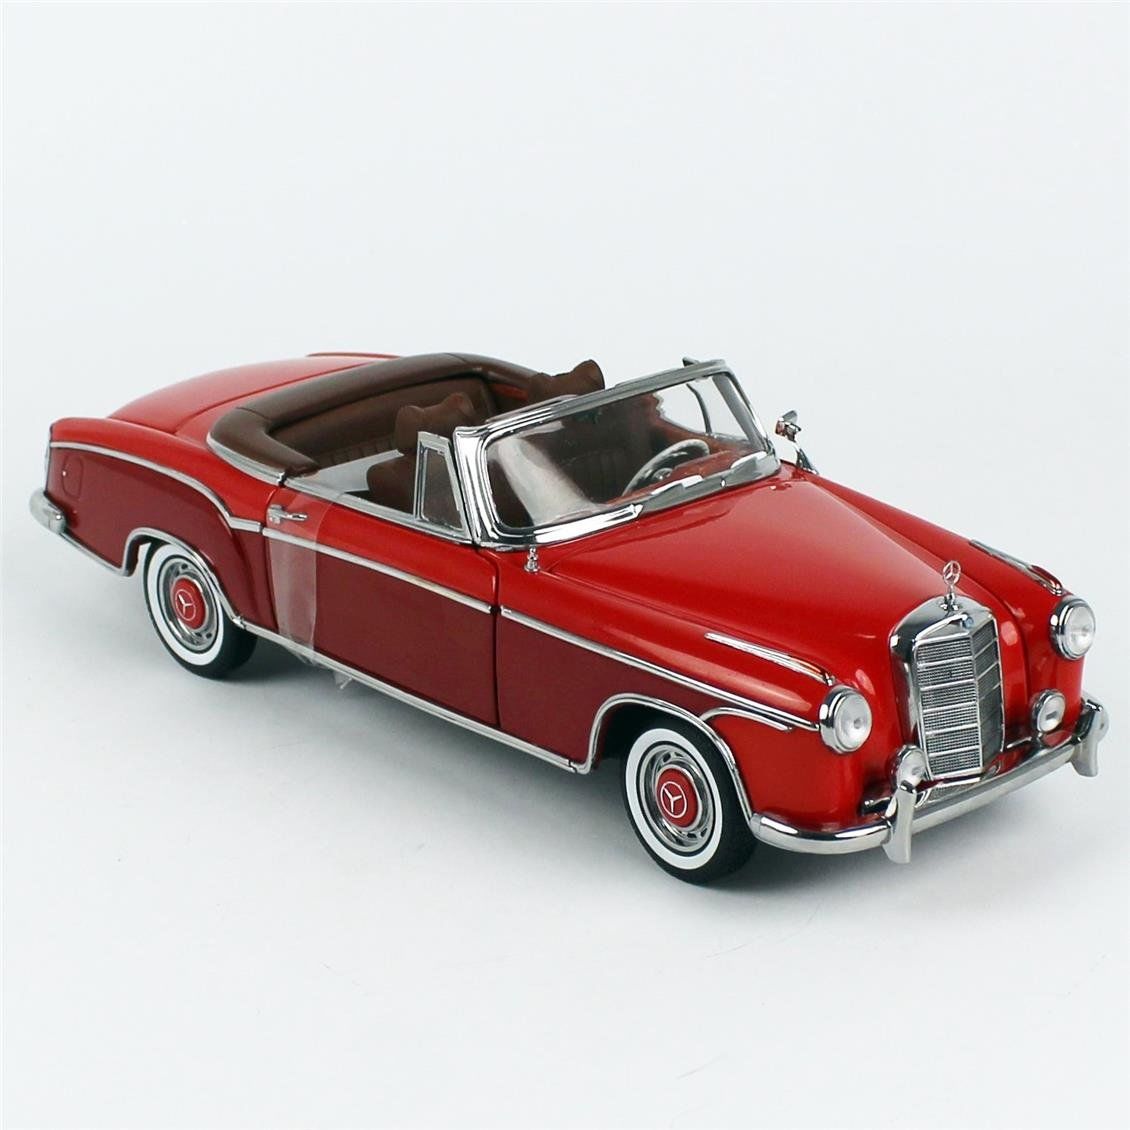 Sunstar 3594 1/18 Ölçek, 1960 Mercedes-Benz 220 SE Cabriolet, Kırmızı/Koyu Gri, Sergilemeye Hazır Metal Araba Modeli